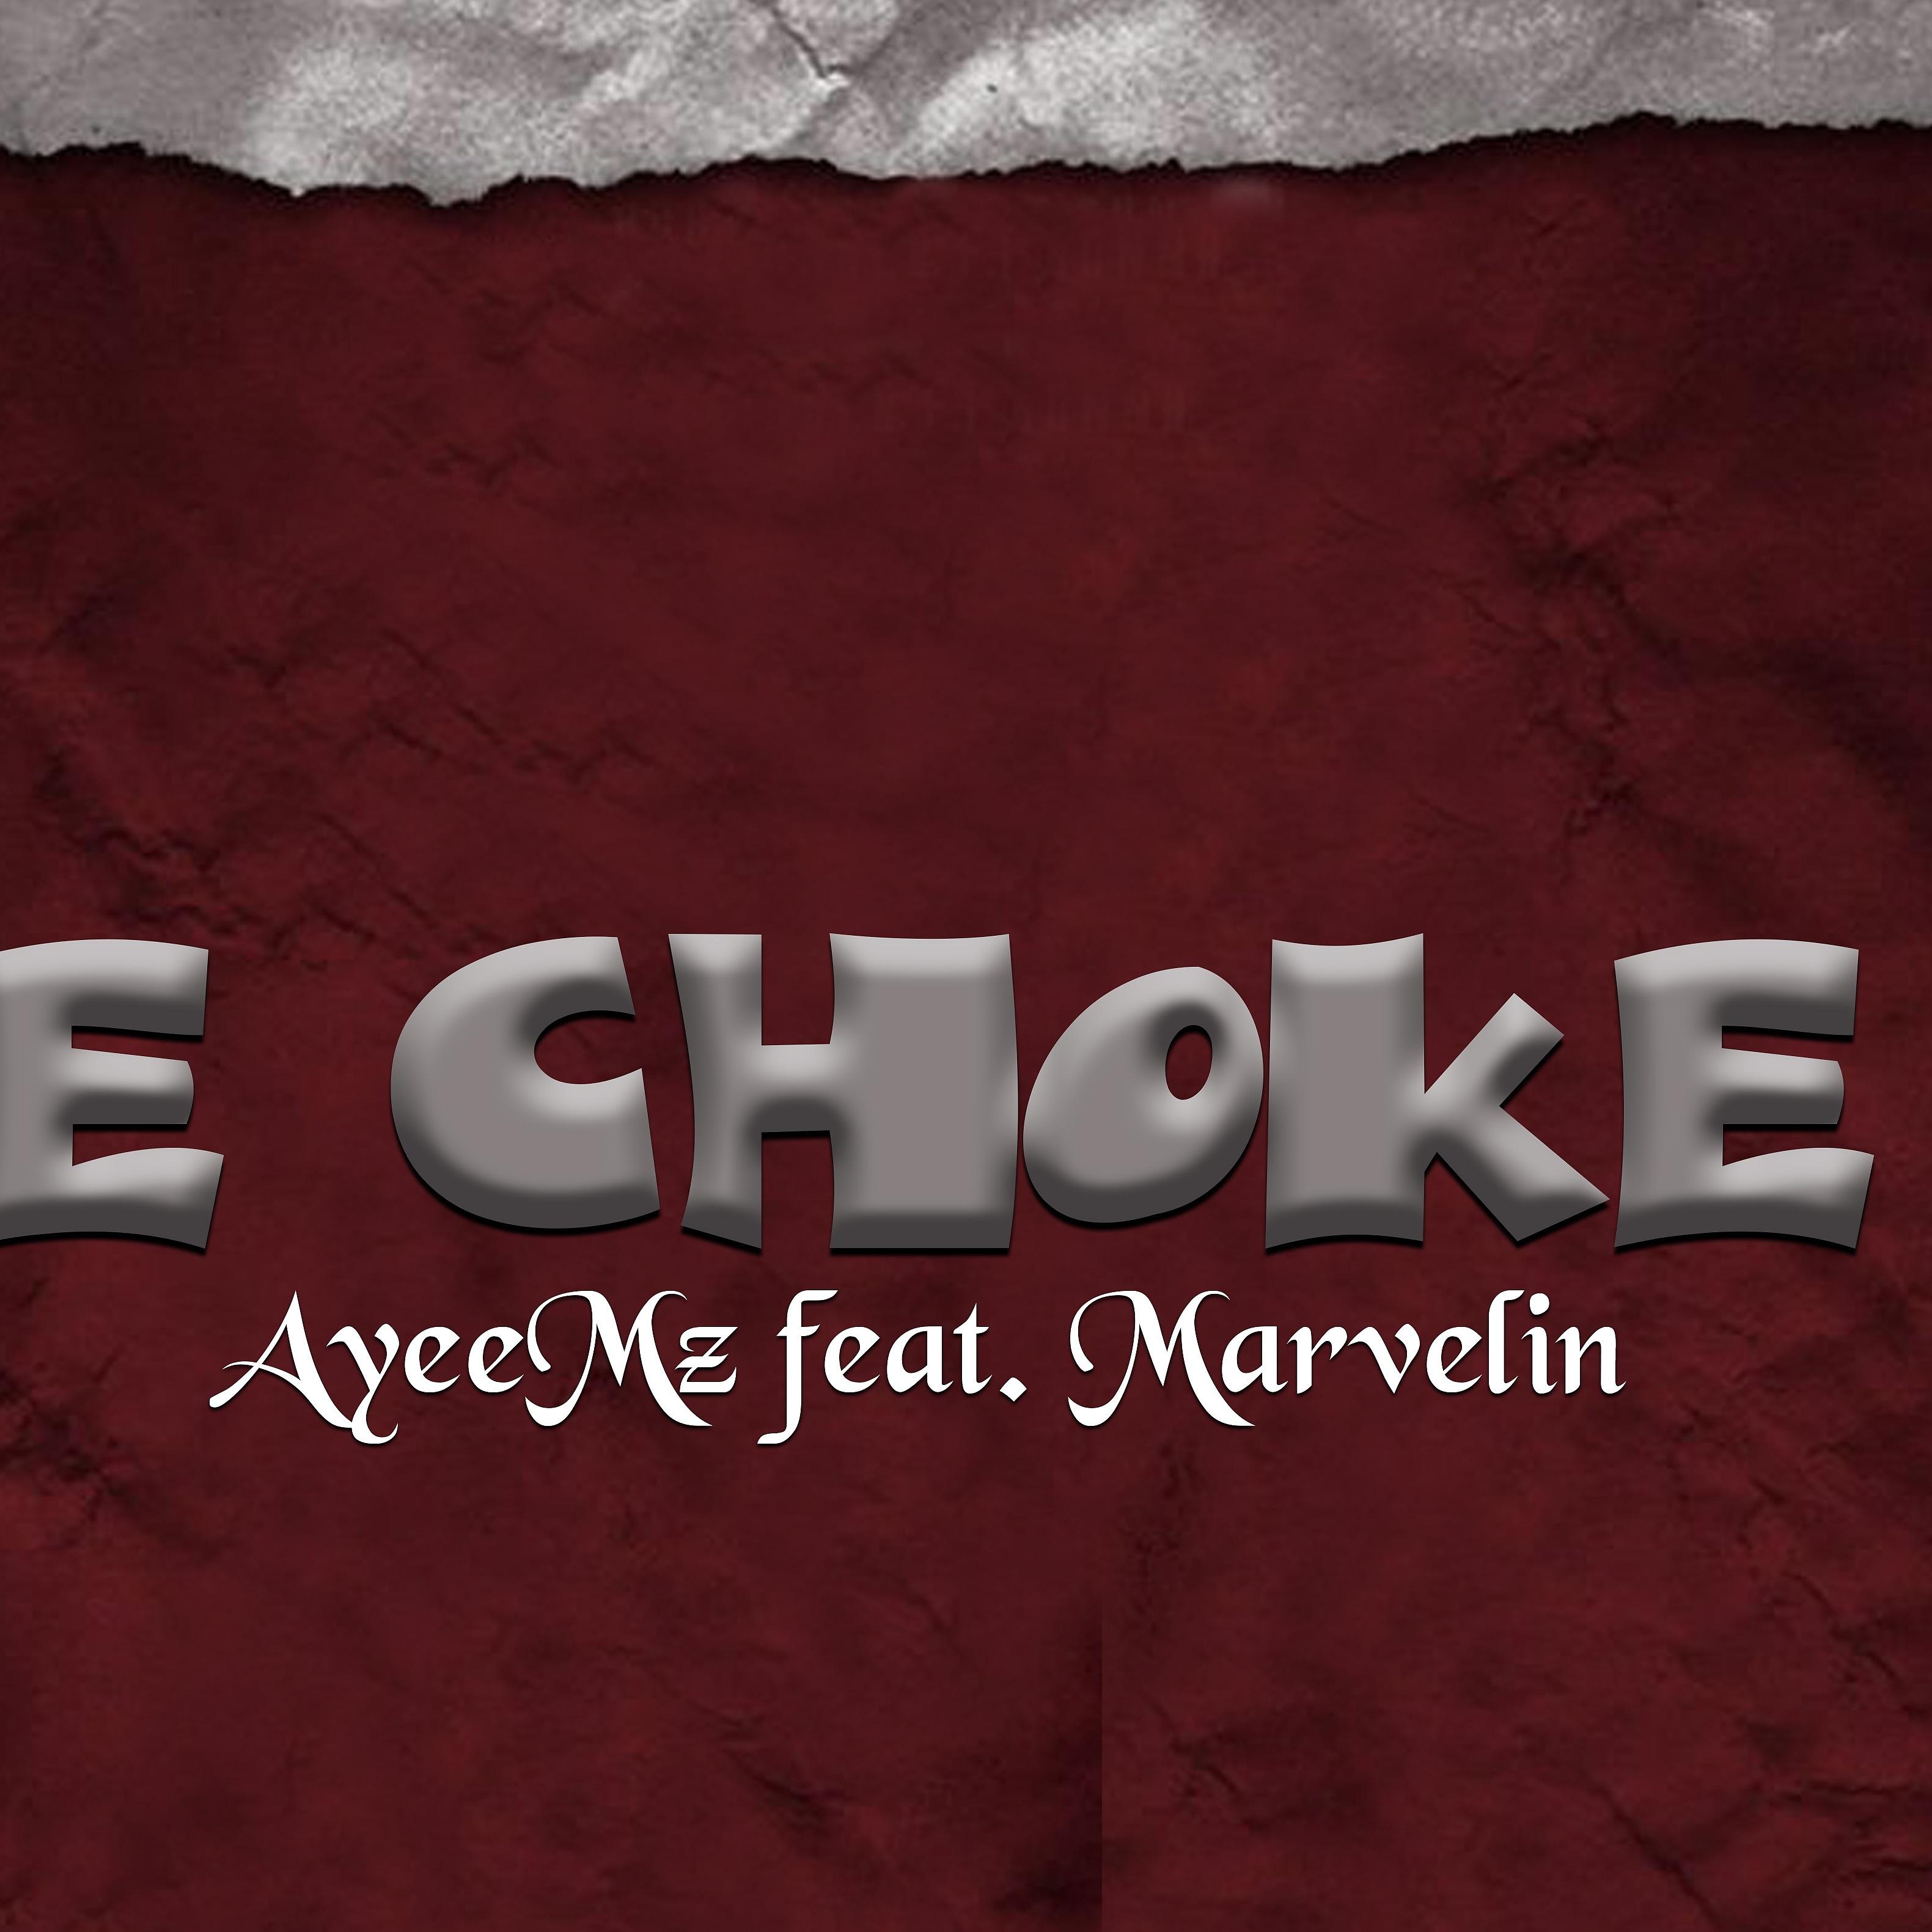 Постер альбома E Choke